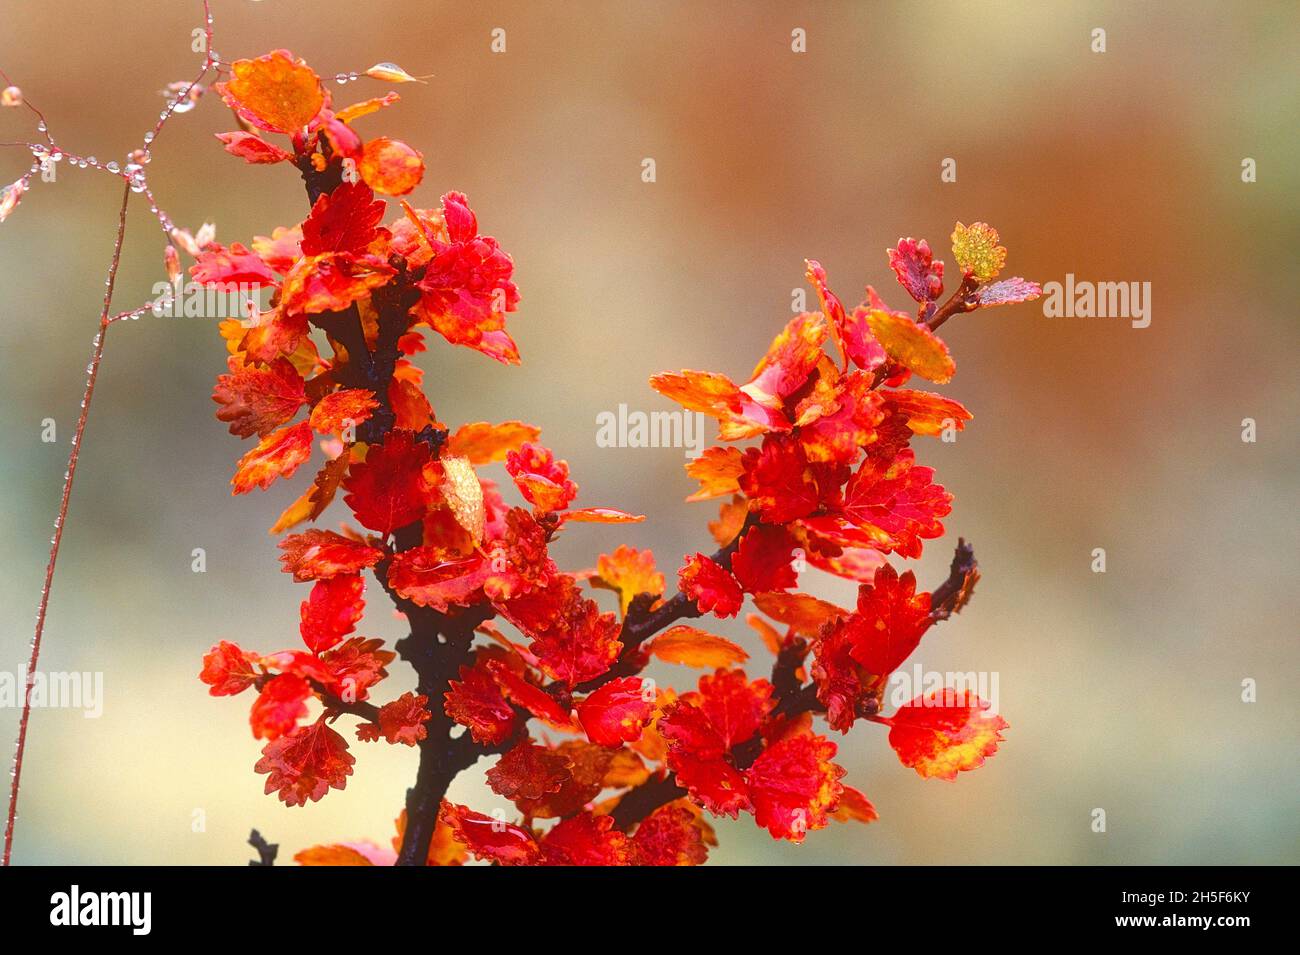 Abedul enano. Betula nana, Betulaceae, colores otoñales, gotas de lluvia, otoño, Arbusto, planta, Noruega Foto de stock